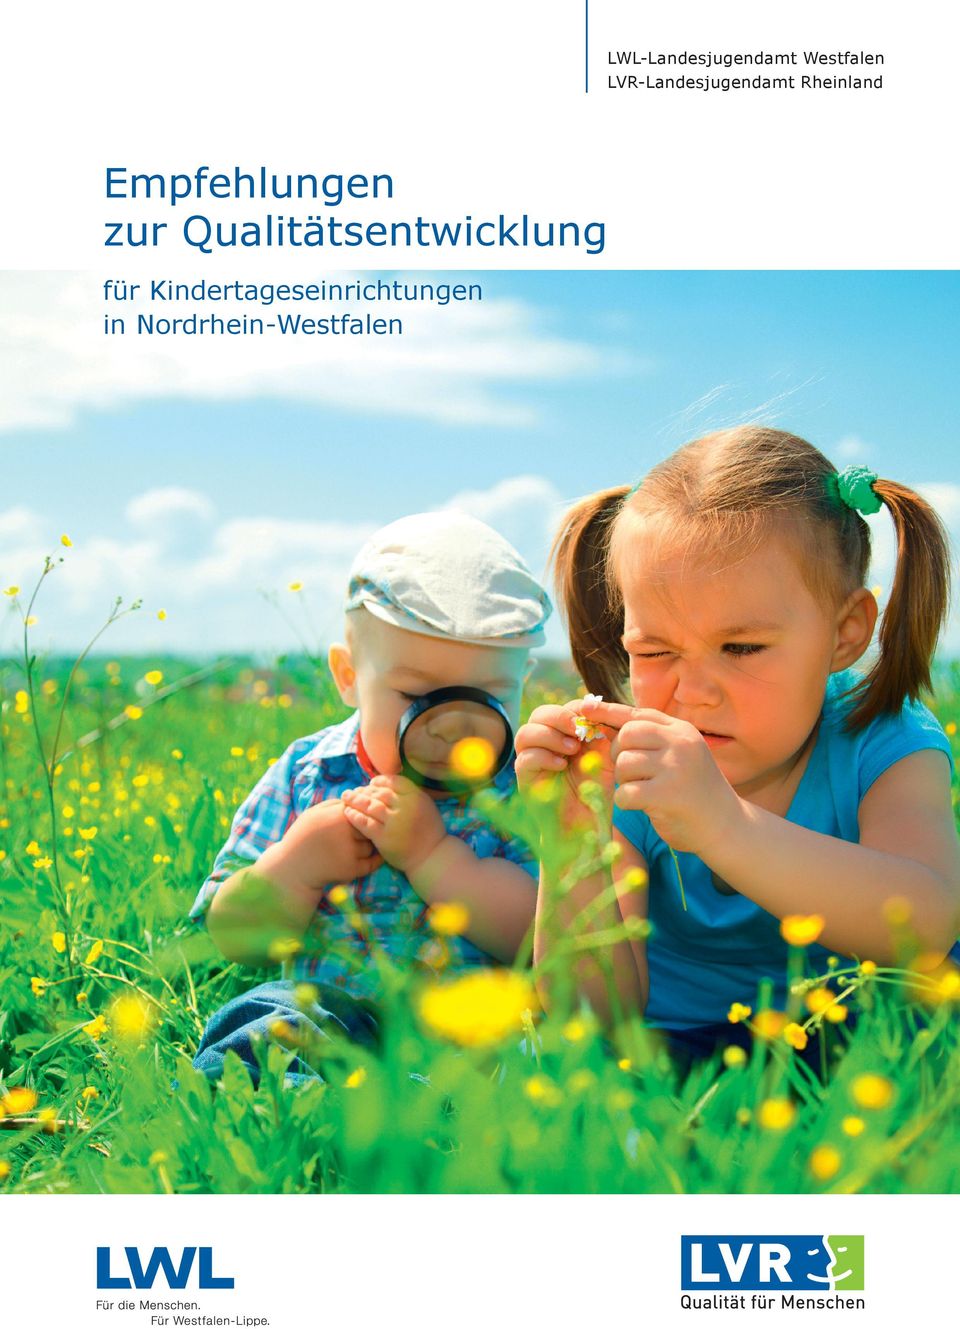 Kindertageseinrichtungen in Nordrhein-Westfalen